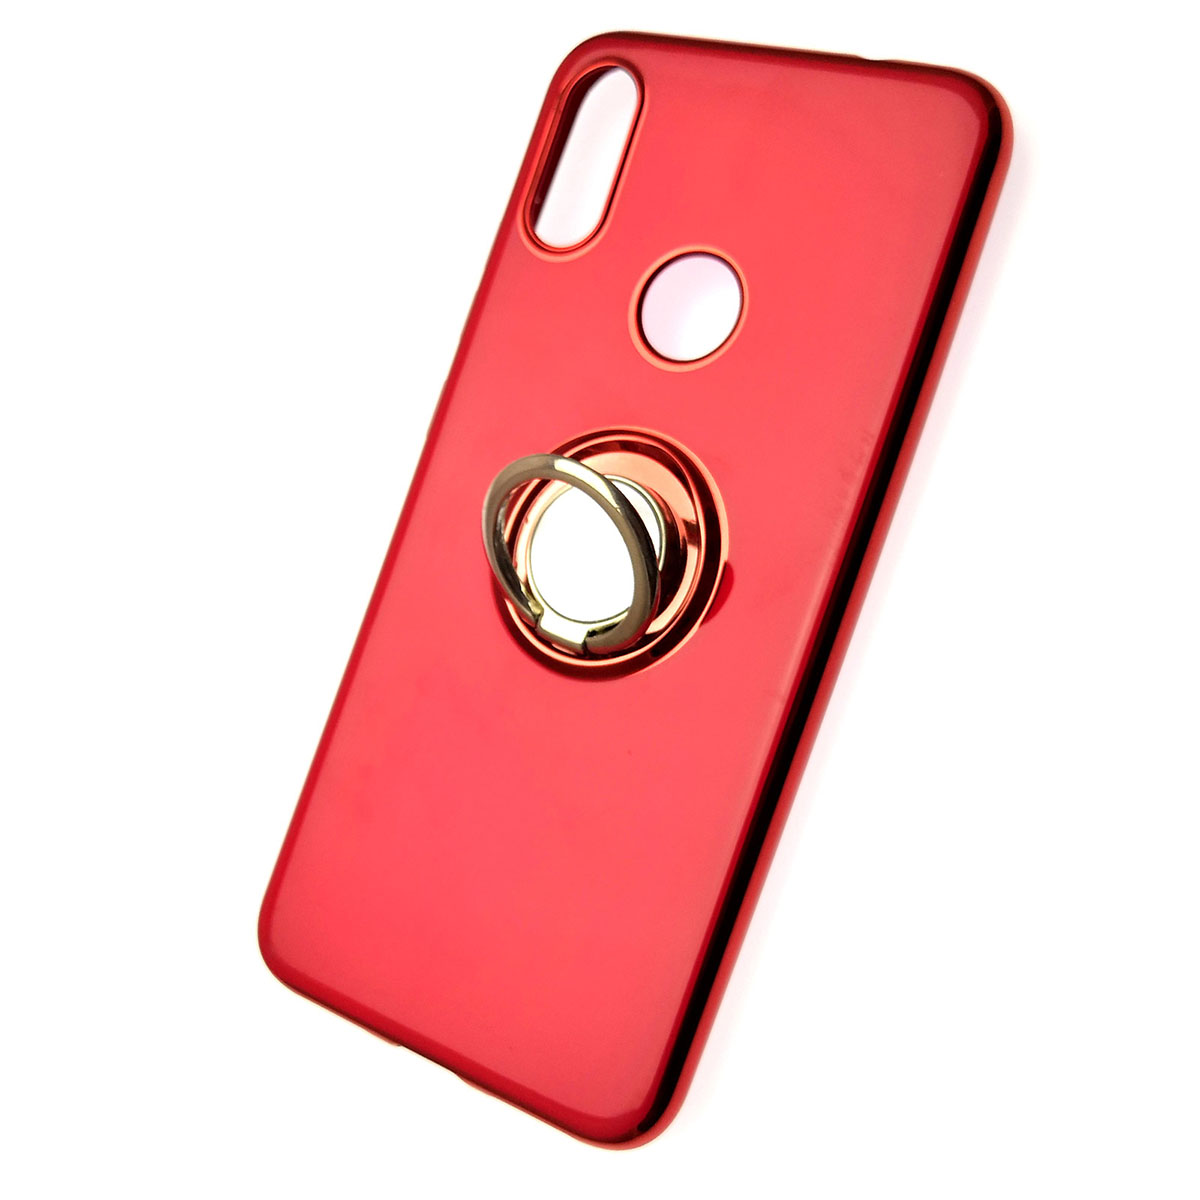 Чехол накладка для XIAOMI Redmi Note 7, Note 7 Pro, силикон, кольцо держатель, цвет красный.